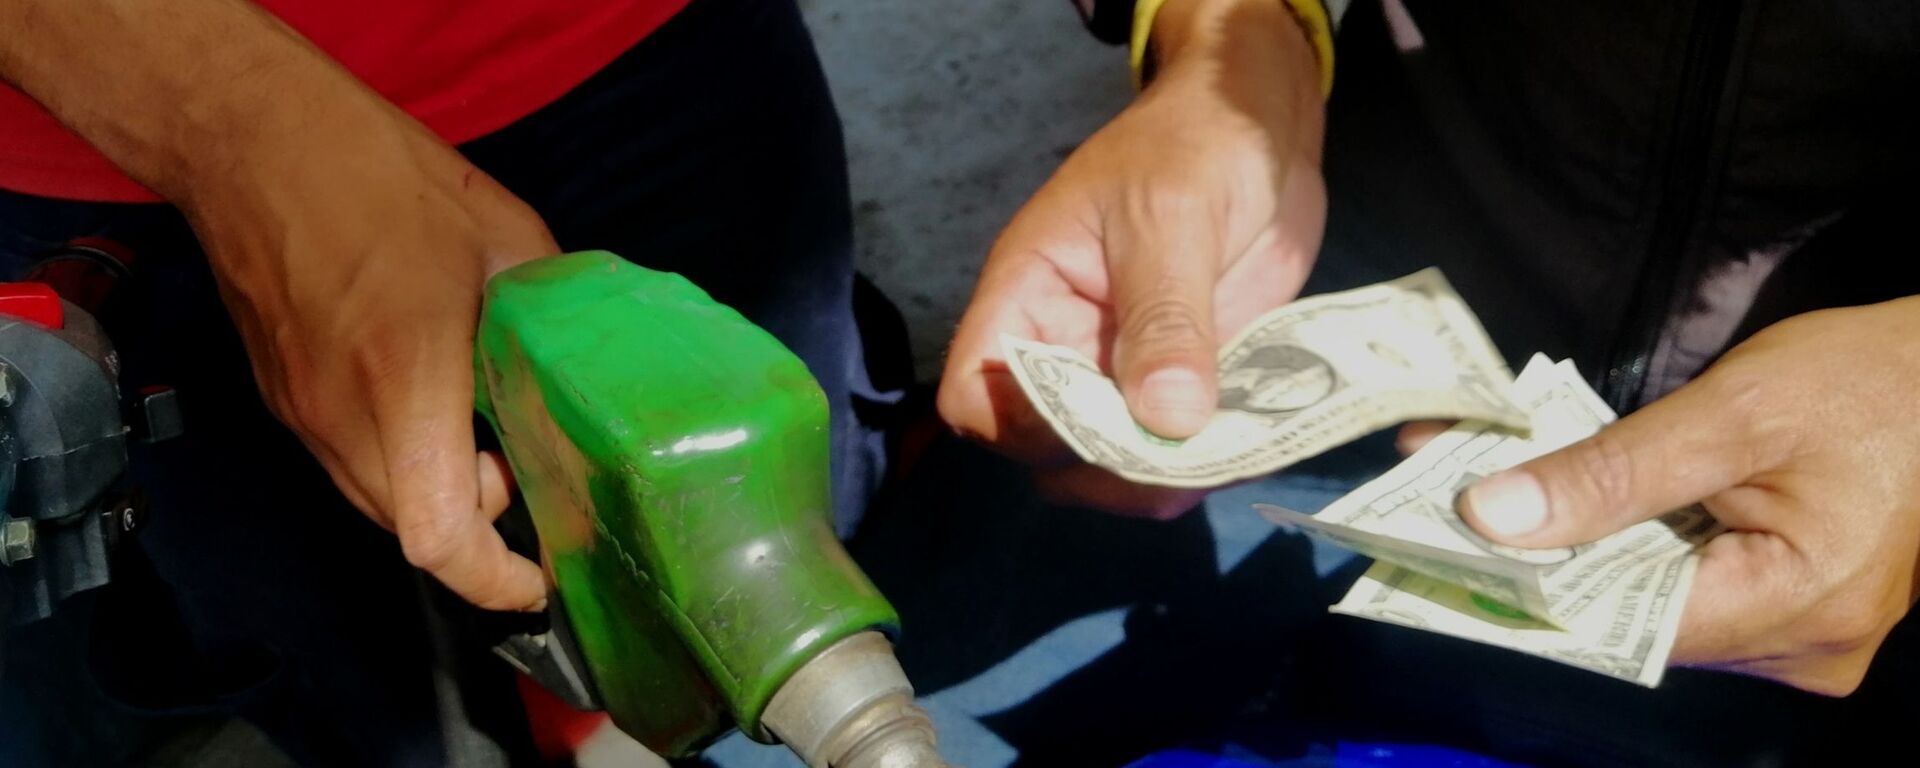 Pago de gasolina con dólares en gasolinera Las Mercedes, Caracas - Sputnik Mundo, 1920, 16.03.2022